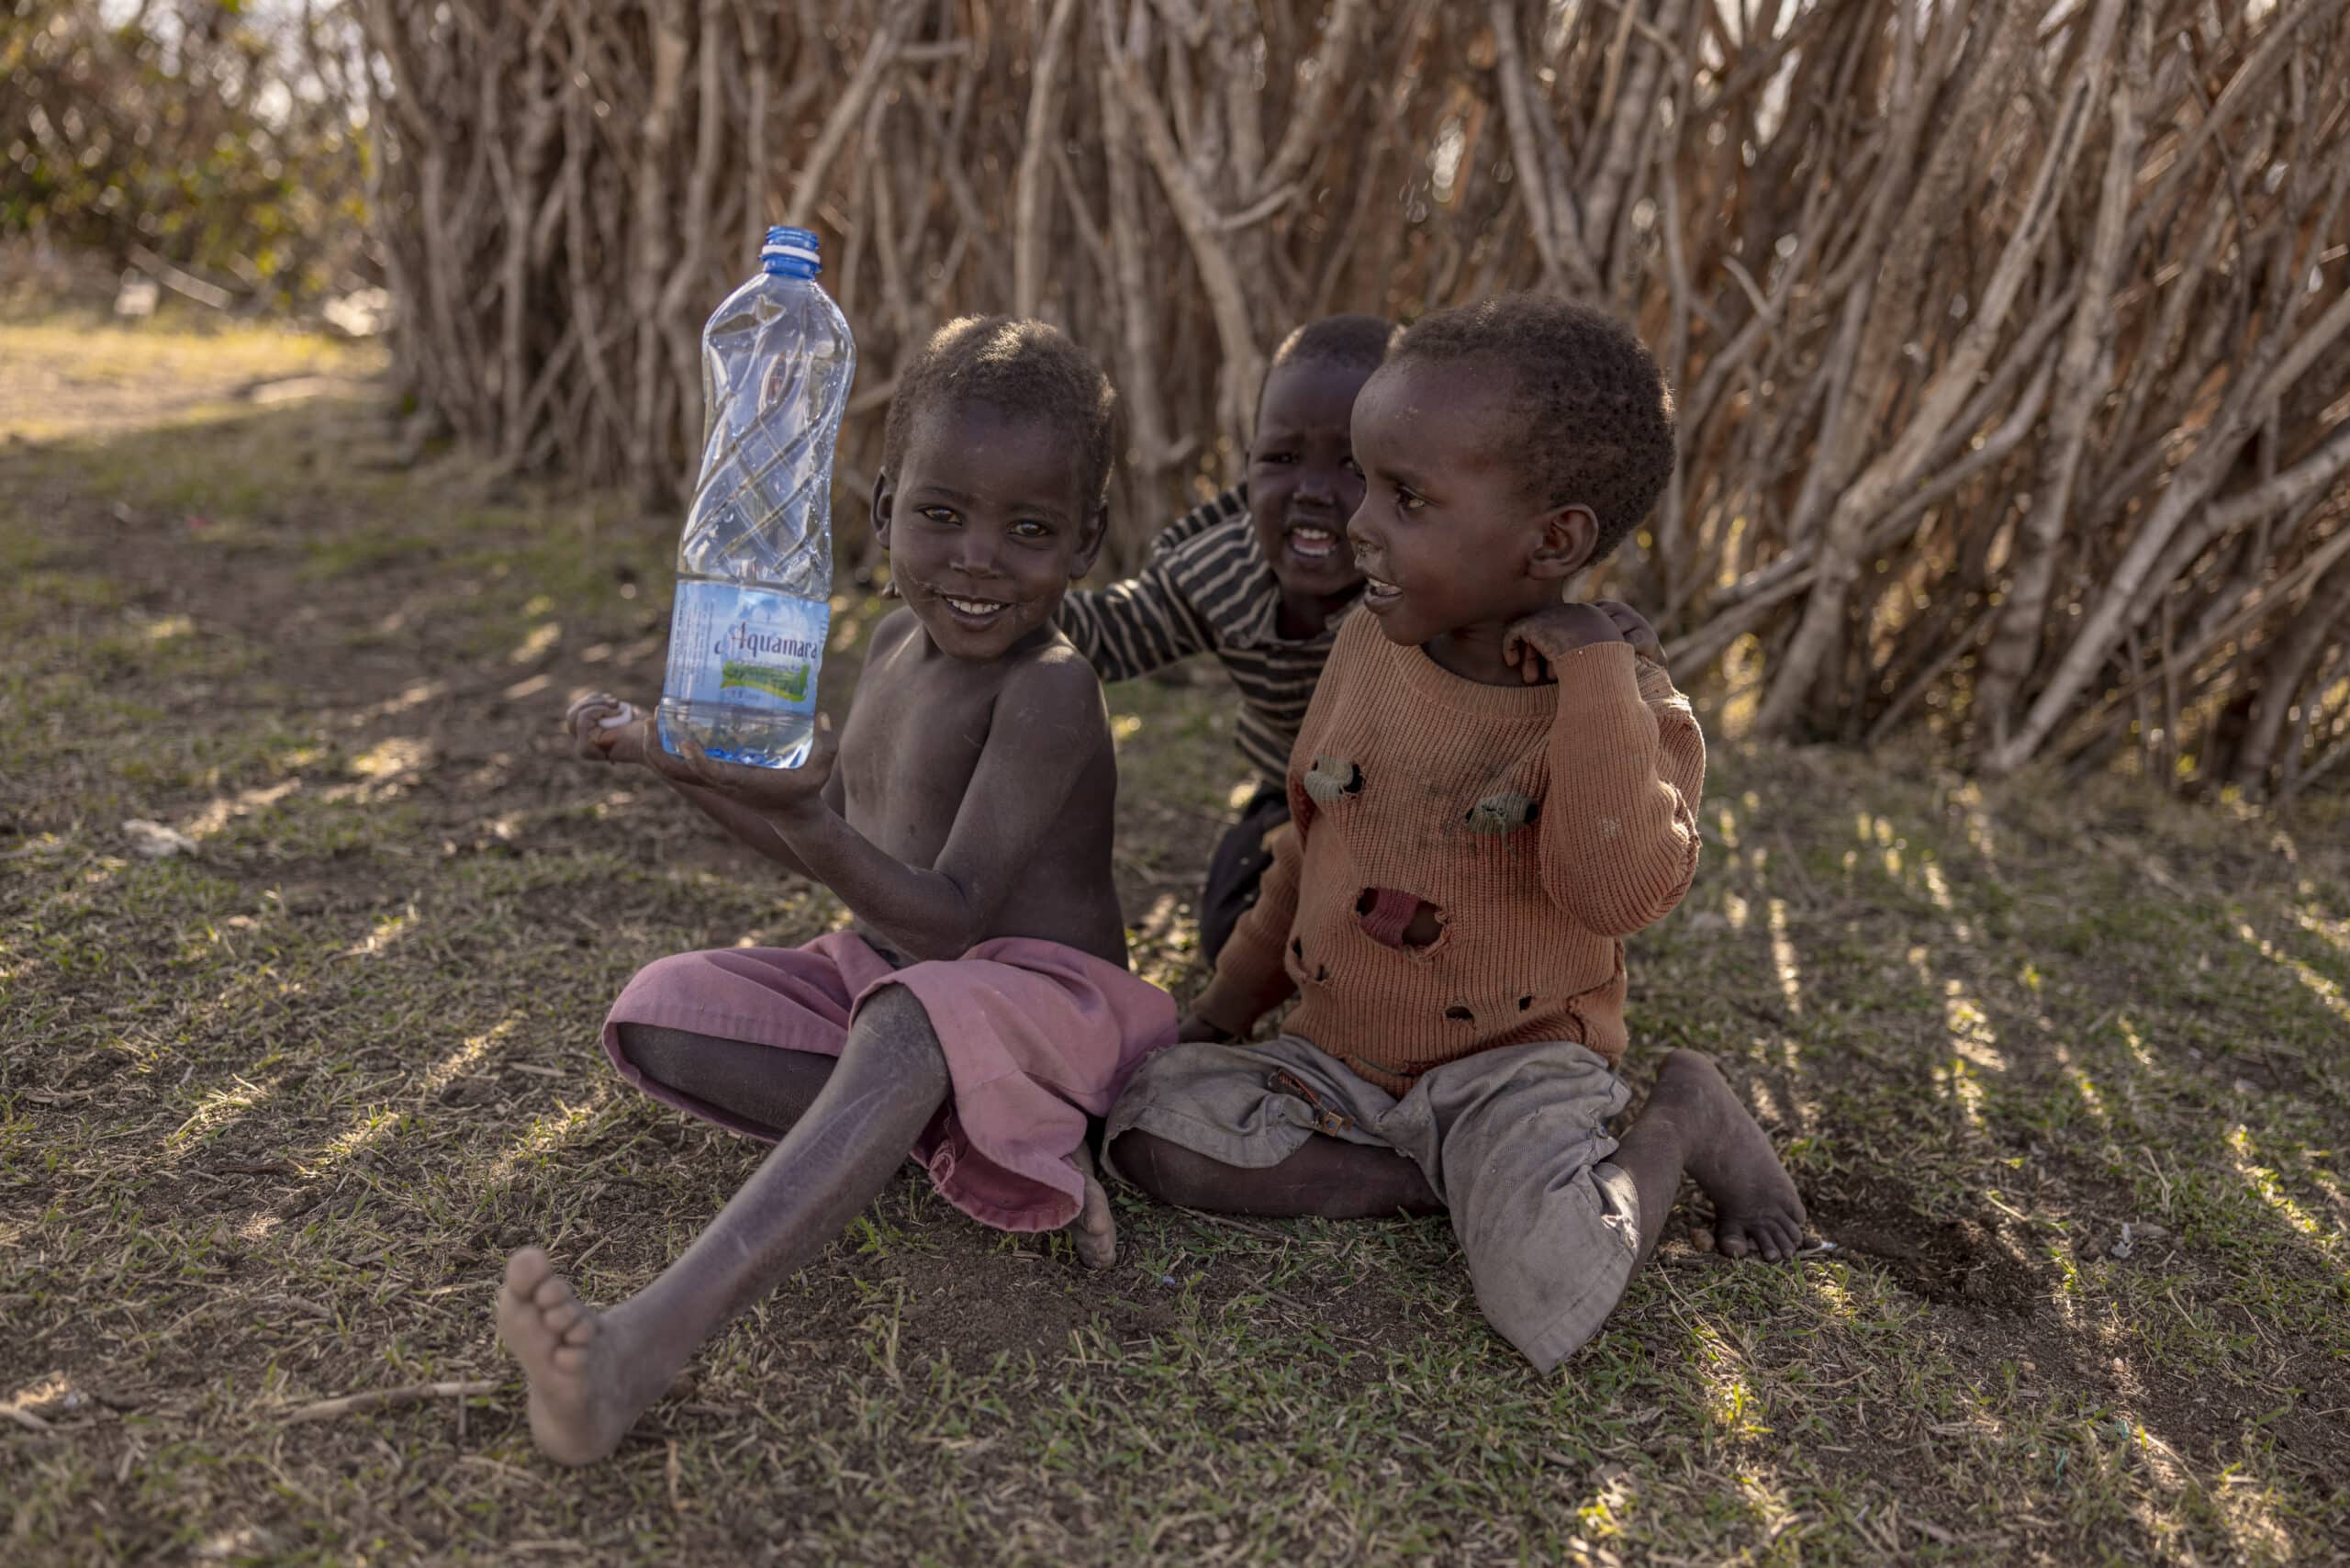 Drei kleine Kinder sitzen auf dem Boden neben einem Strohzaun. Ein Kind hält eine große Wasserflasche und lächelt, während die anderen fröhlich zuschauen. Sie befinden sich in einer ländlichen Umgebung mit natürlichem Licht. © Fotografie Tomas Rodriguez